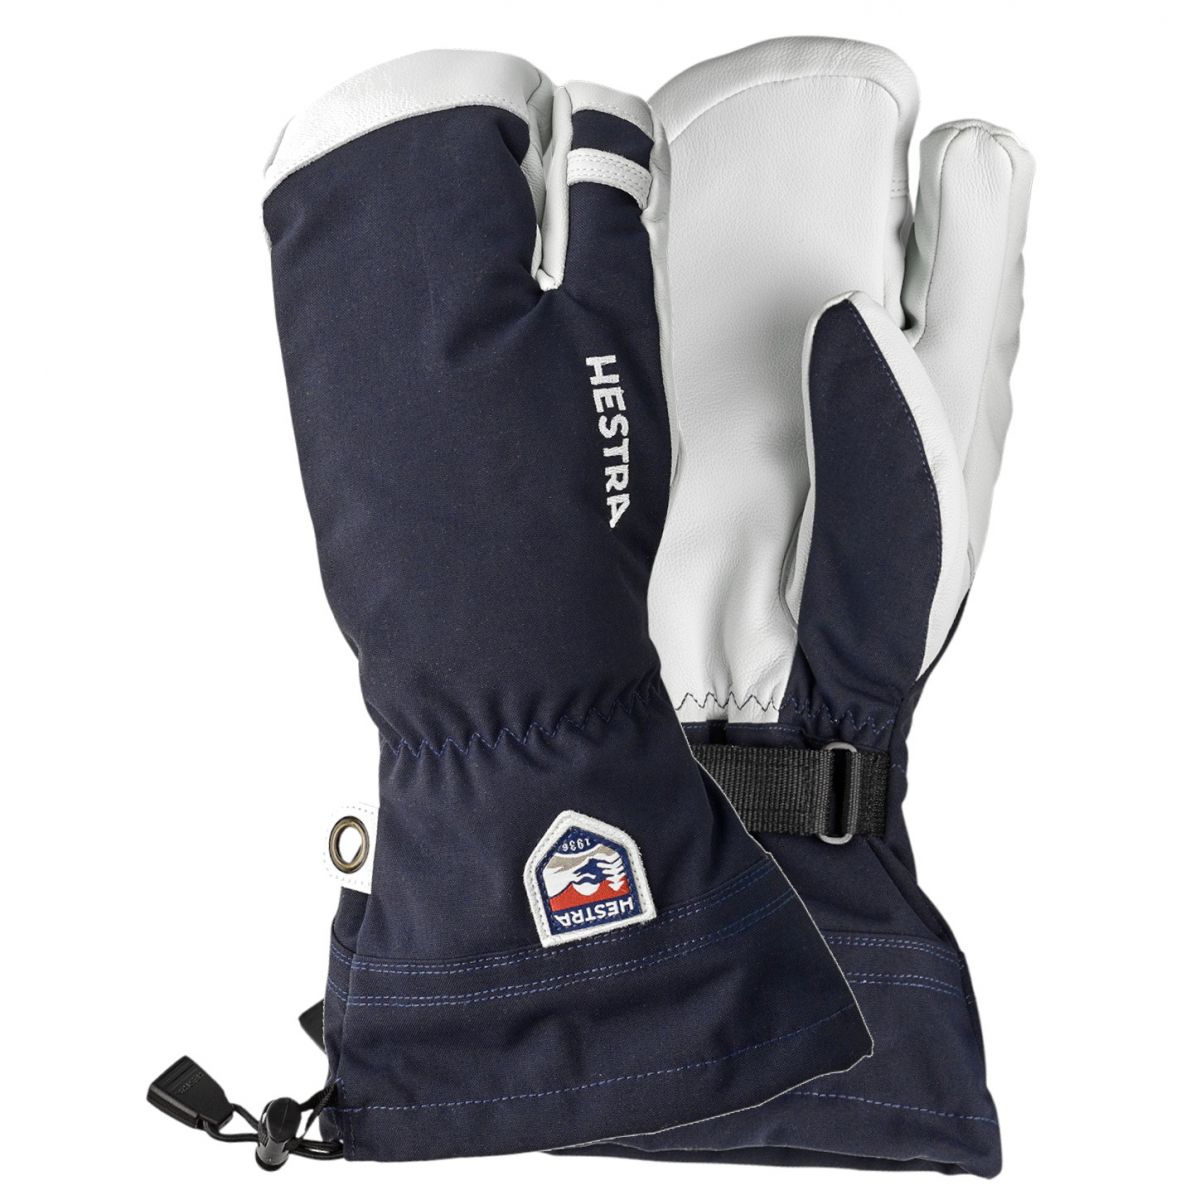 Brug Hestra Army Leather Heli 3 finger skihandsker, mørkeblå til en forbedret oplevelse